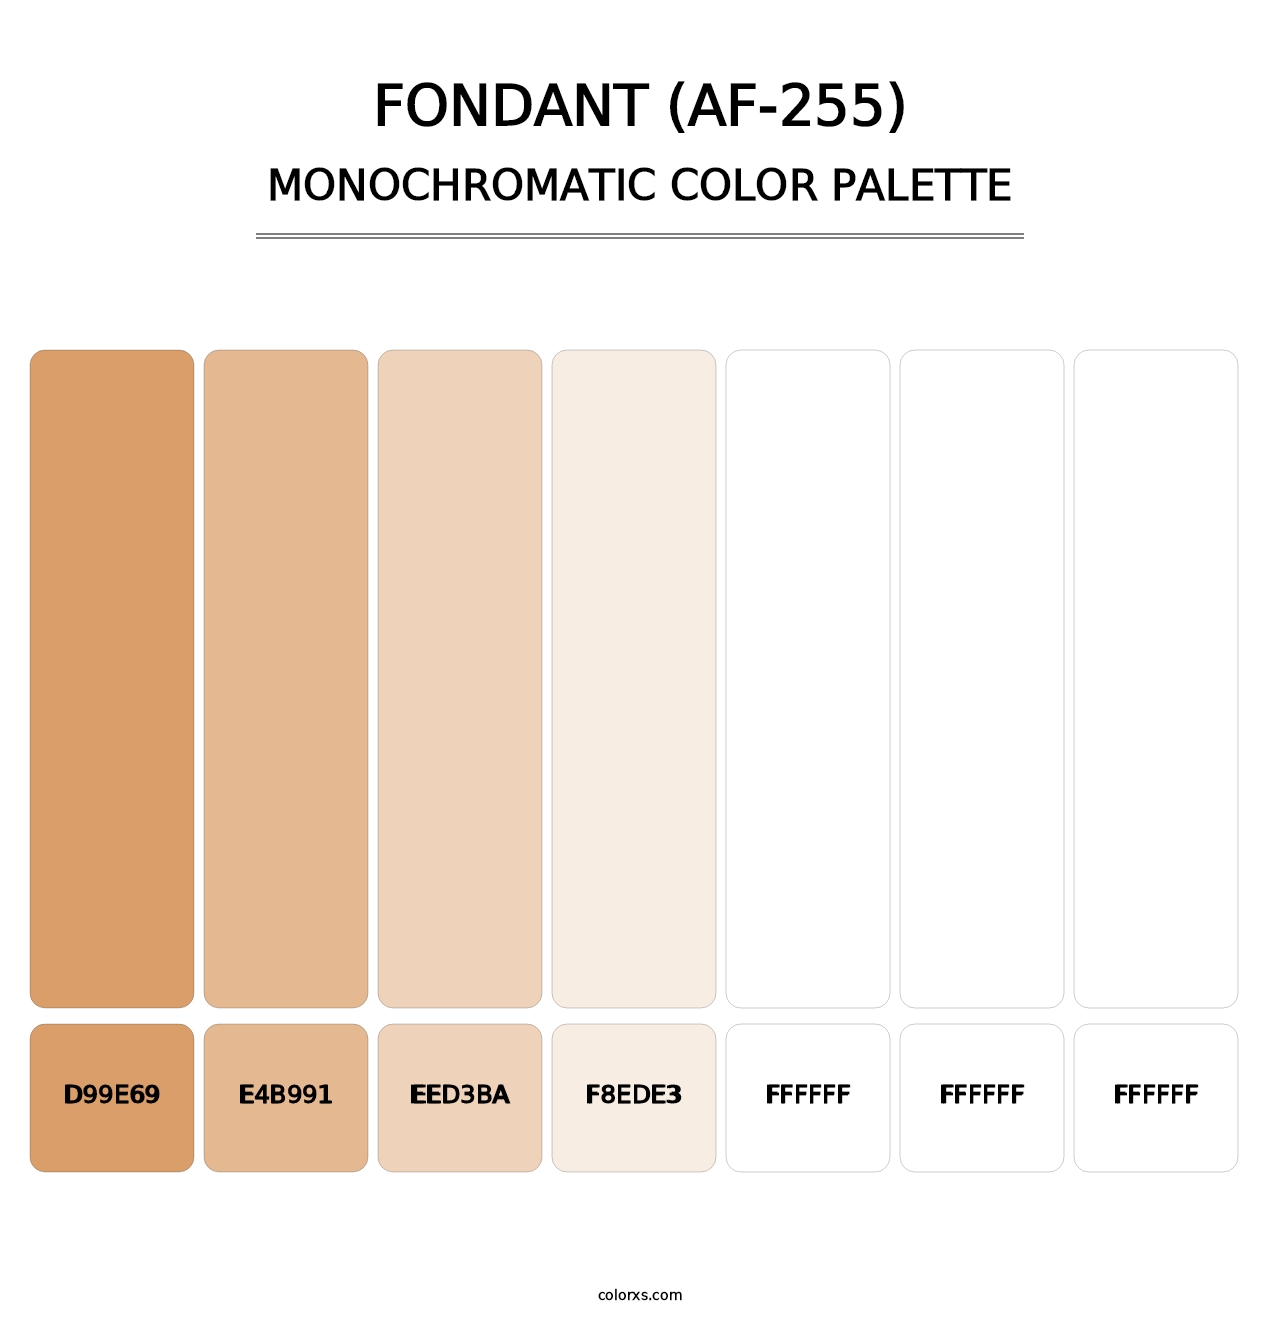 Fondant (AF-255) - Monochromatic Color Palette